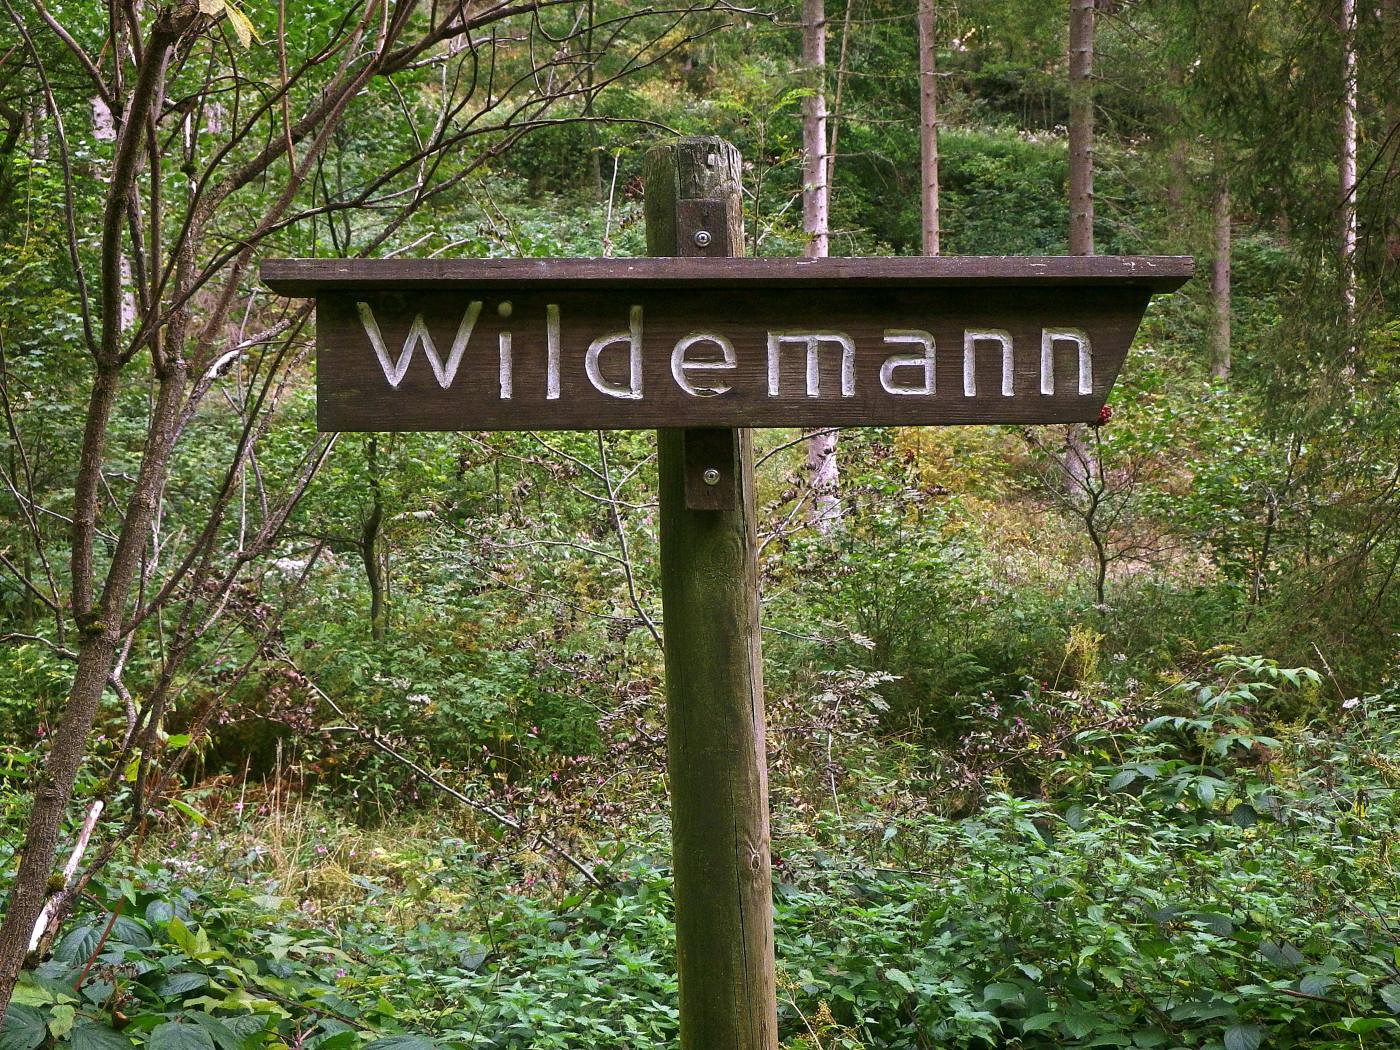 Wildemann